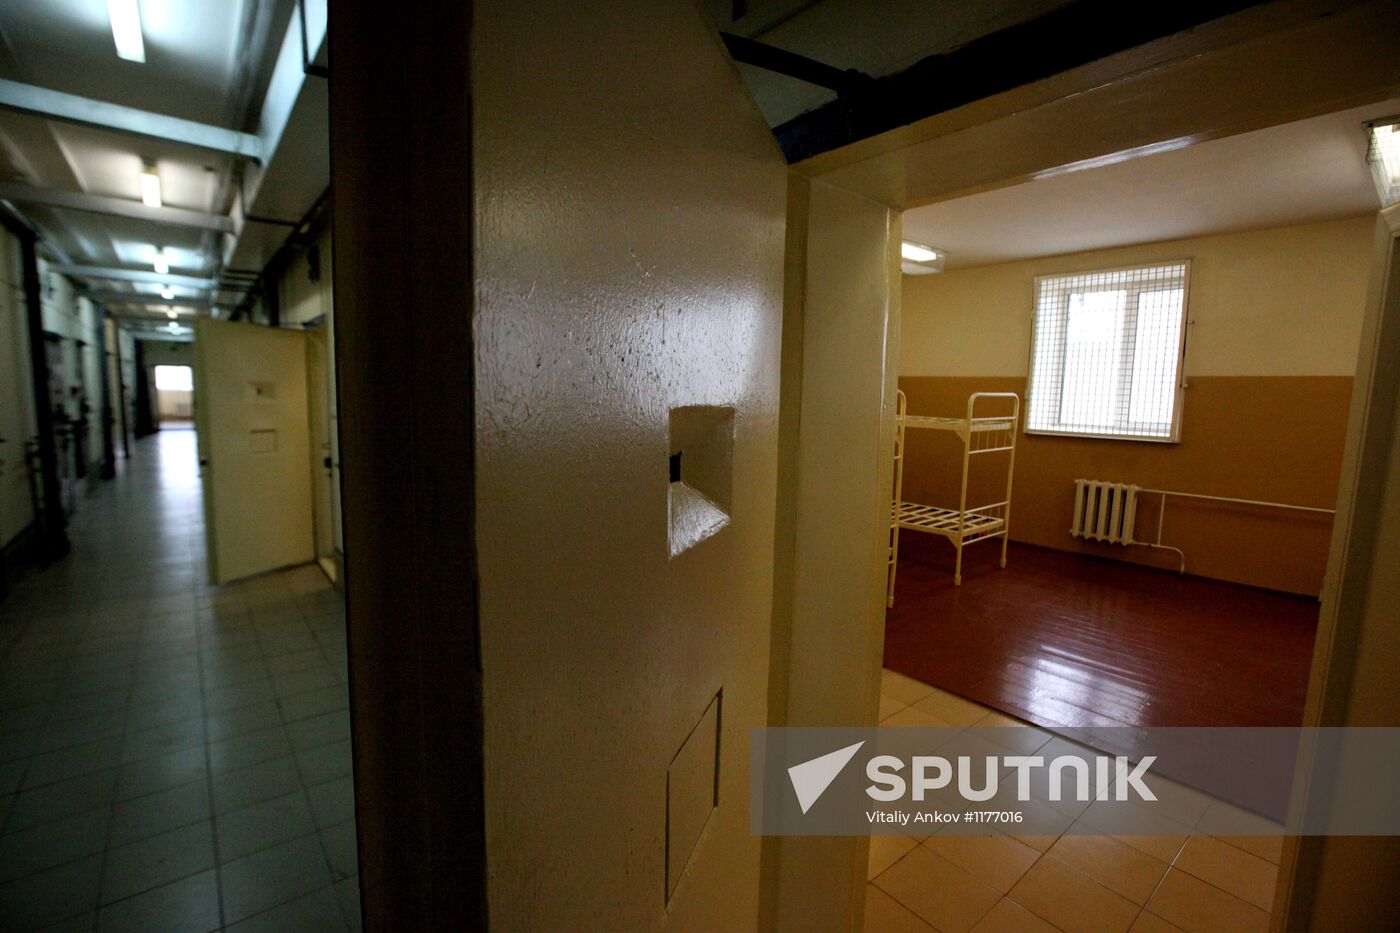 Opening new pre-trial detention center in Ussuriysk